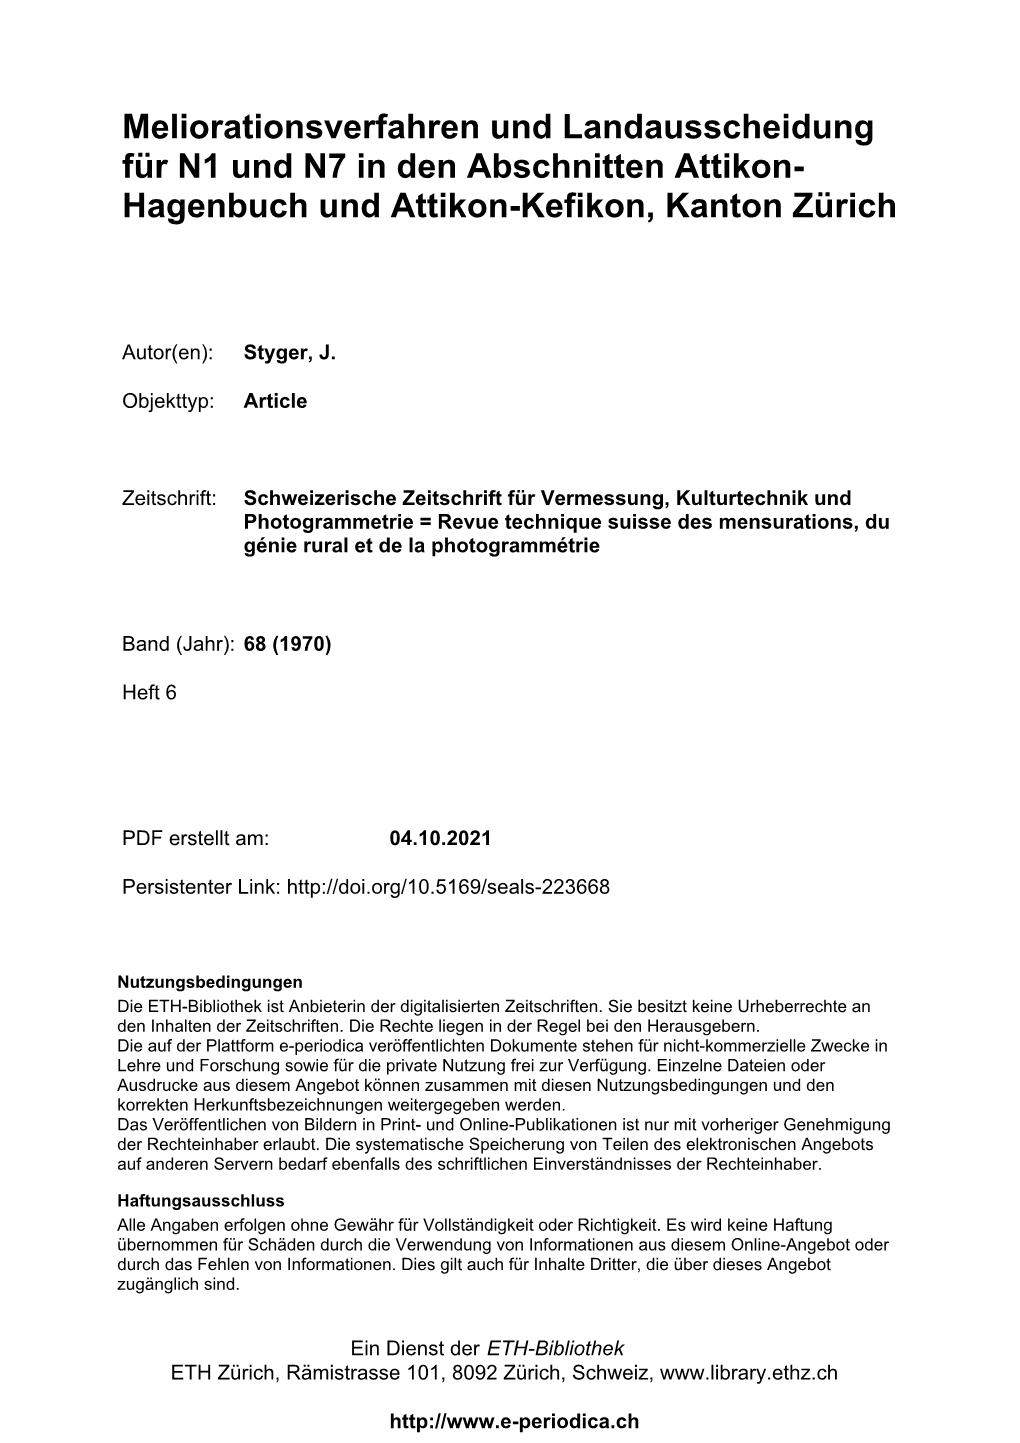 Meliorationsverfahren Und Landausscheidung Für N1 Und N7 in Den Abschnitten Attikon- Hagenbuch Und Attikon-Kefikon, Kanton Zürich